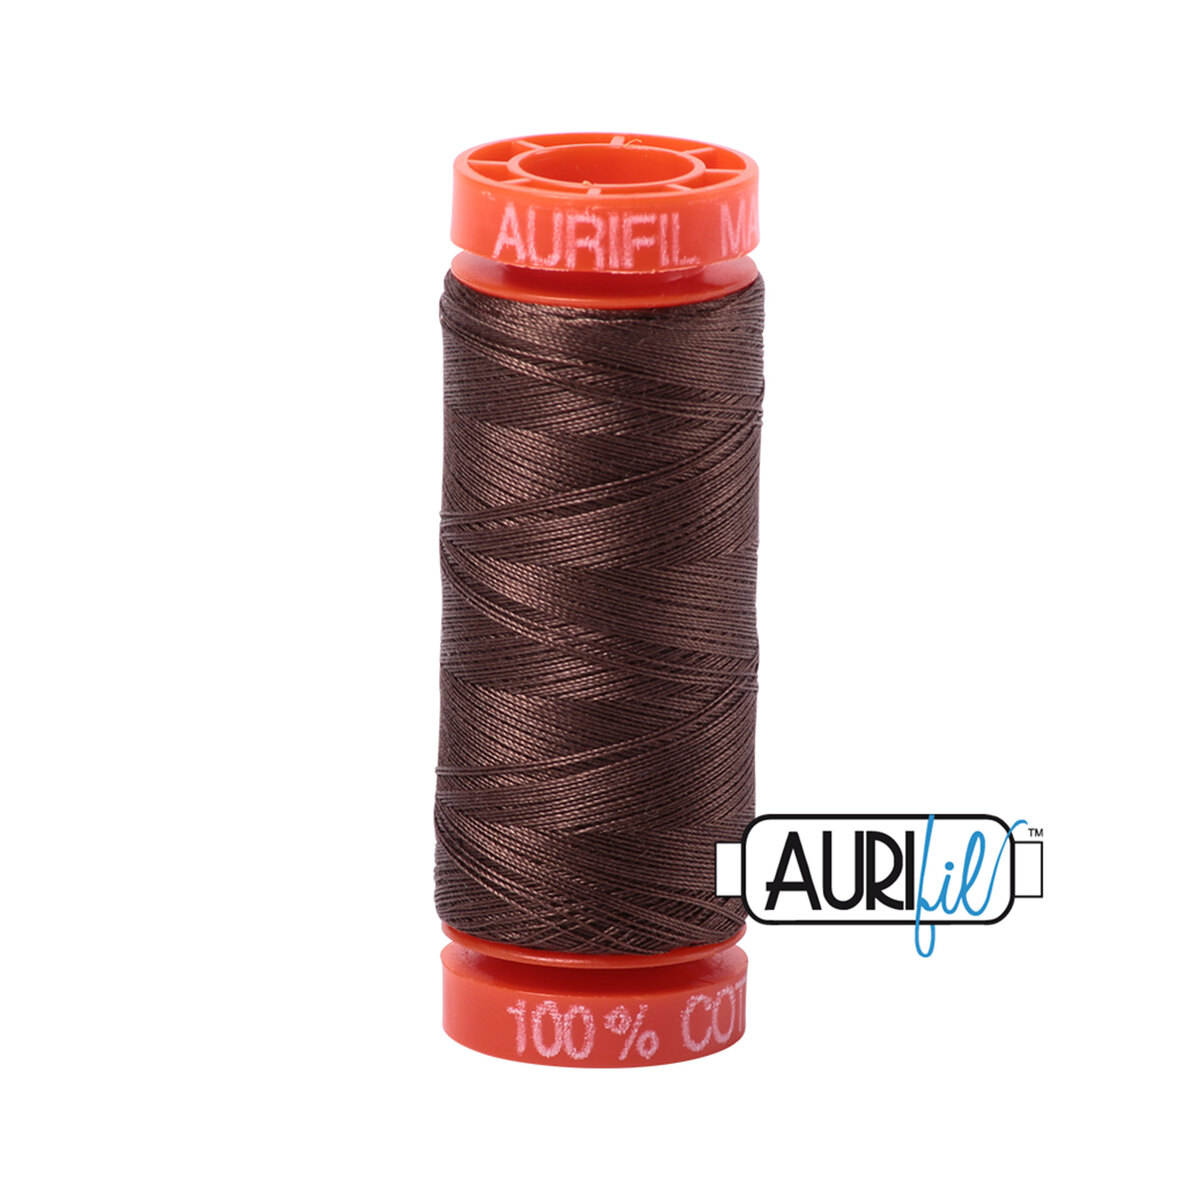 Aurifil 50wt Thread - Purchase Aurifil 50wt Cotton Thread